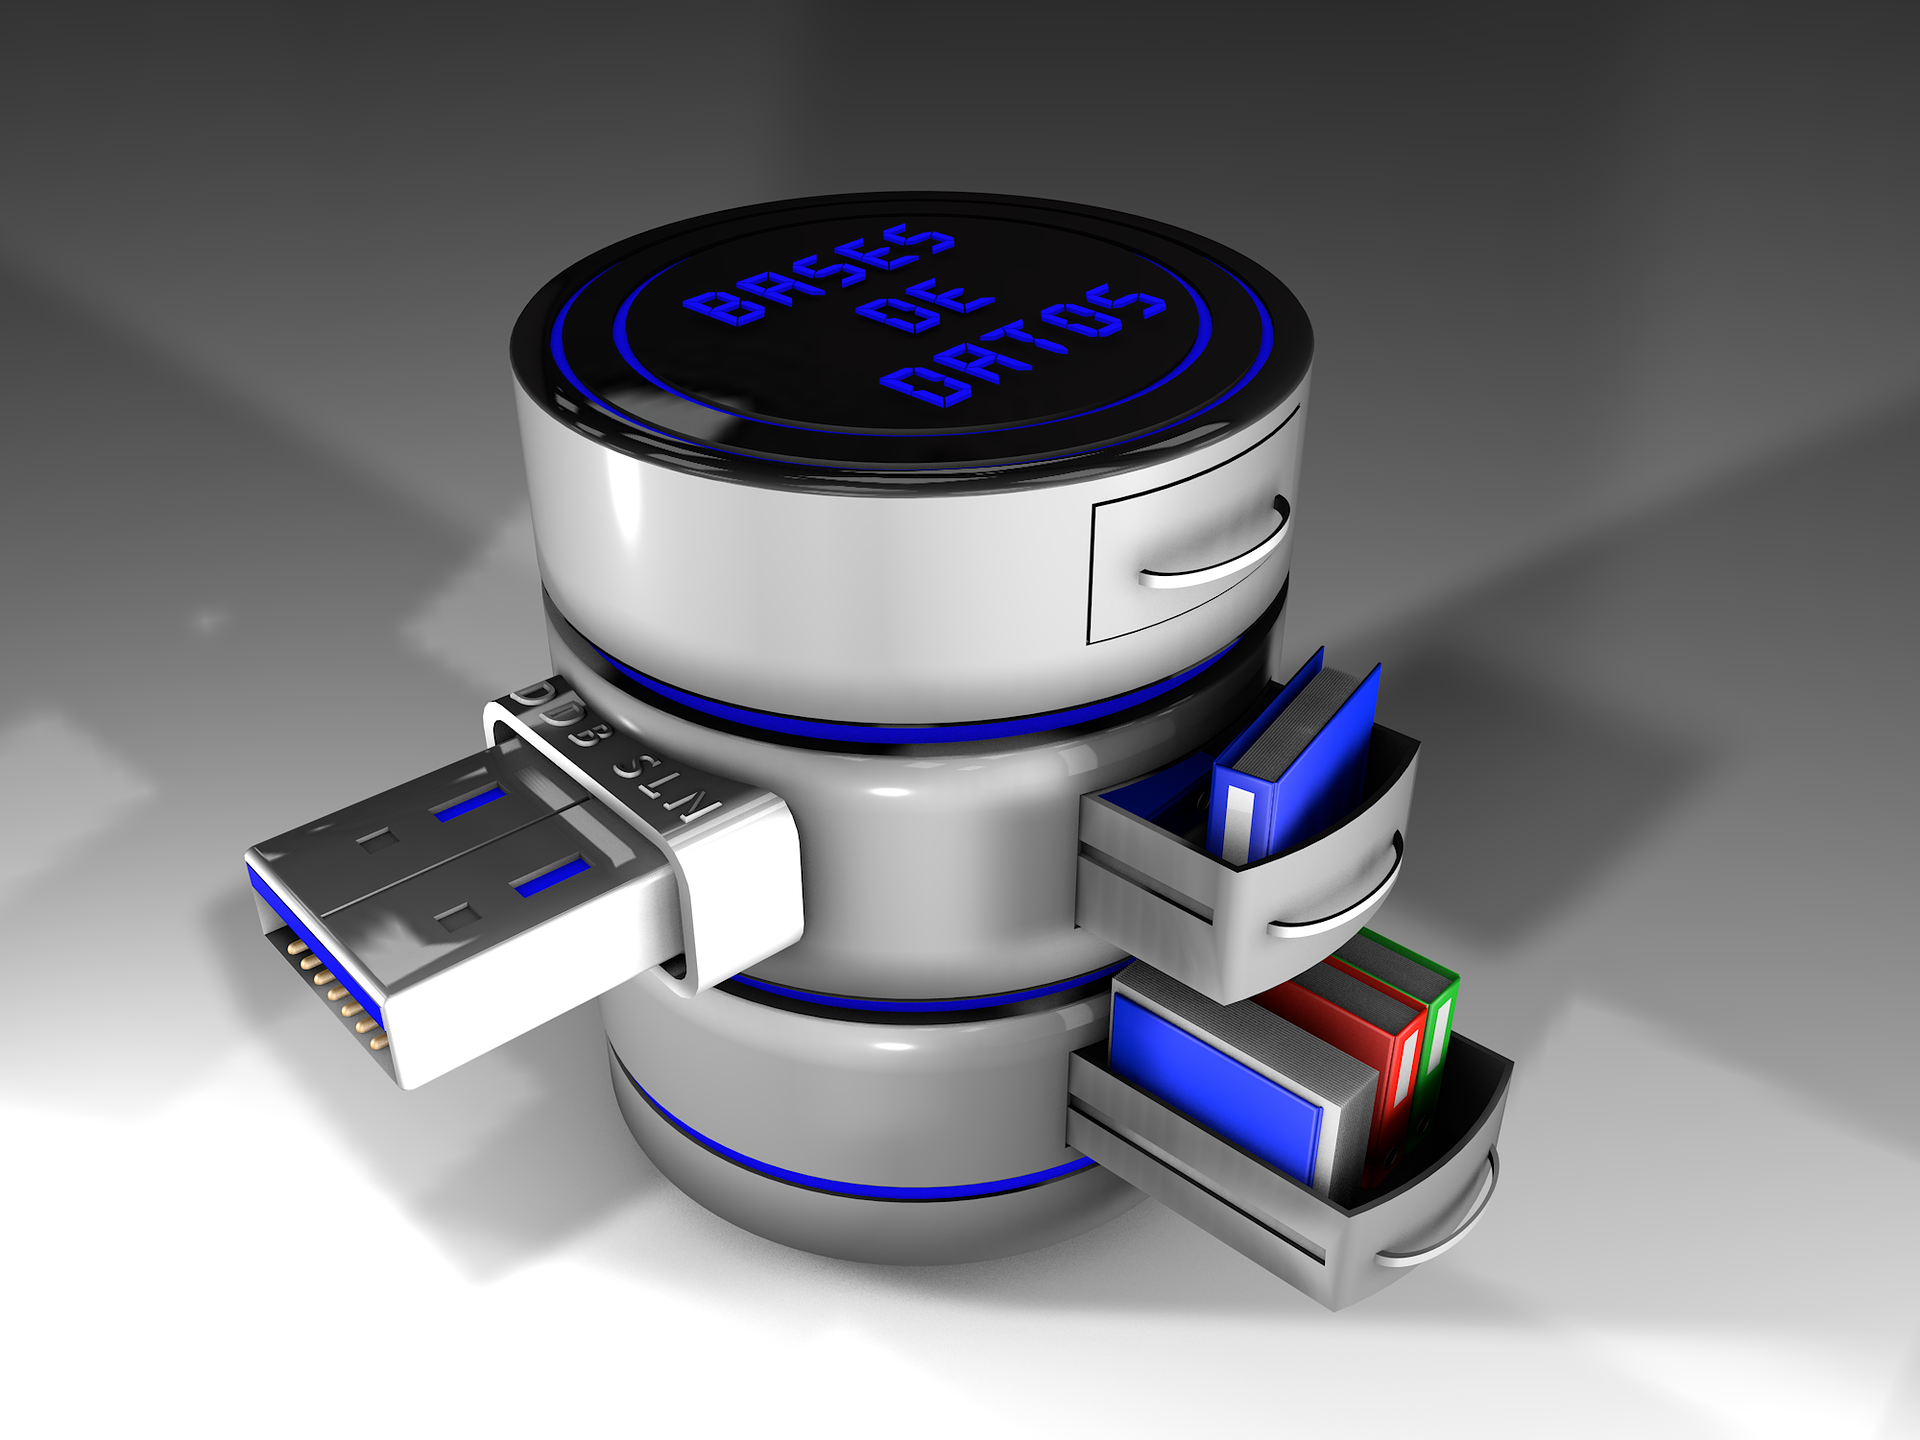 La imagen muestra el icono de una base de datos formado por el dibujo de varios discos de color gris dispuestos formando un cilindro. En esos discos se puede ver la representación de una toma USB y varios cajones abiertos con archivadores en su interior para simbolizar que almacena datos.